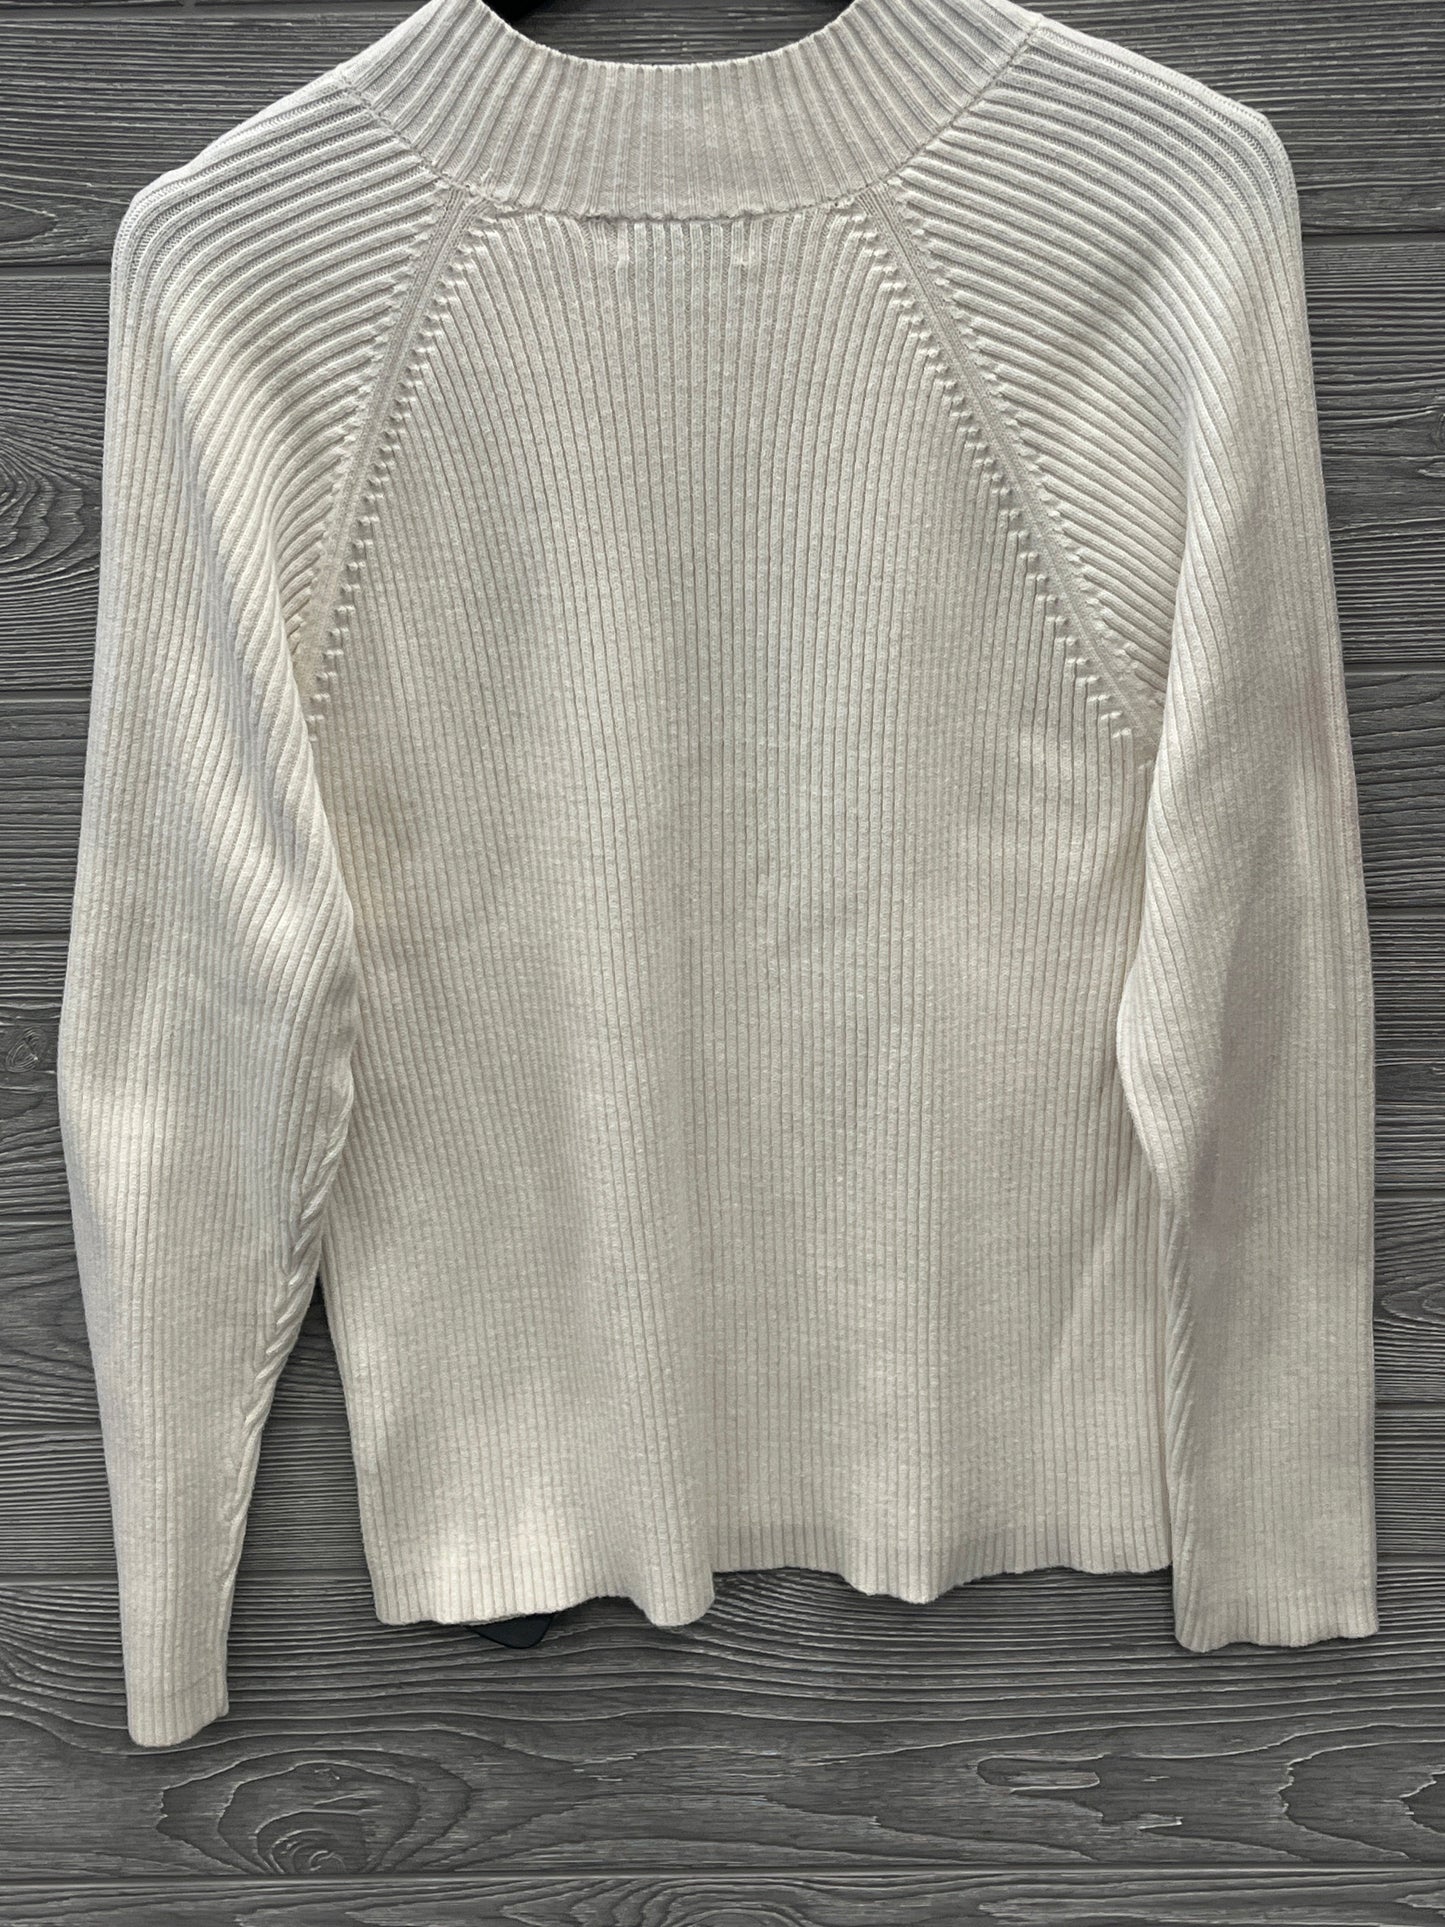 Sweater By Studio Works  Size: Xl